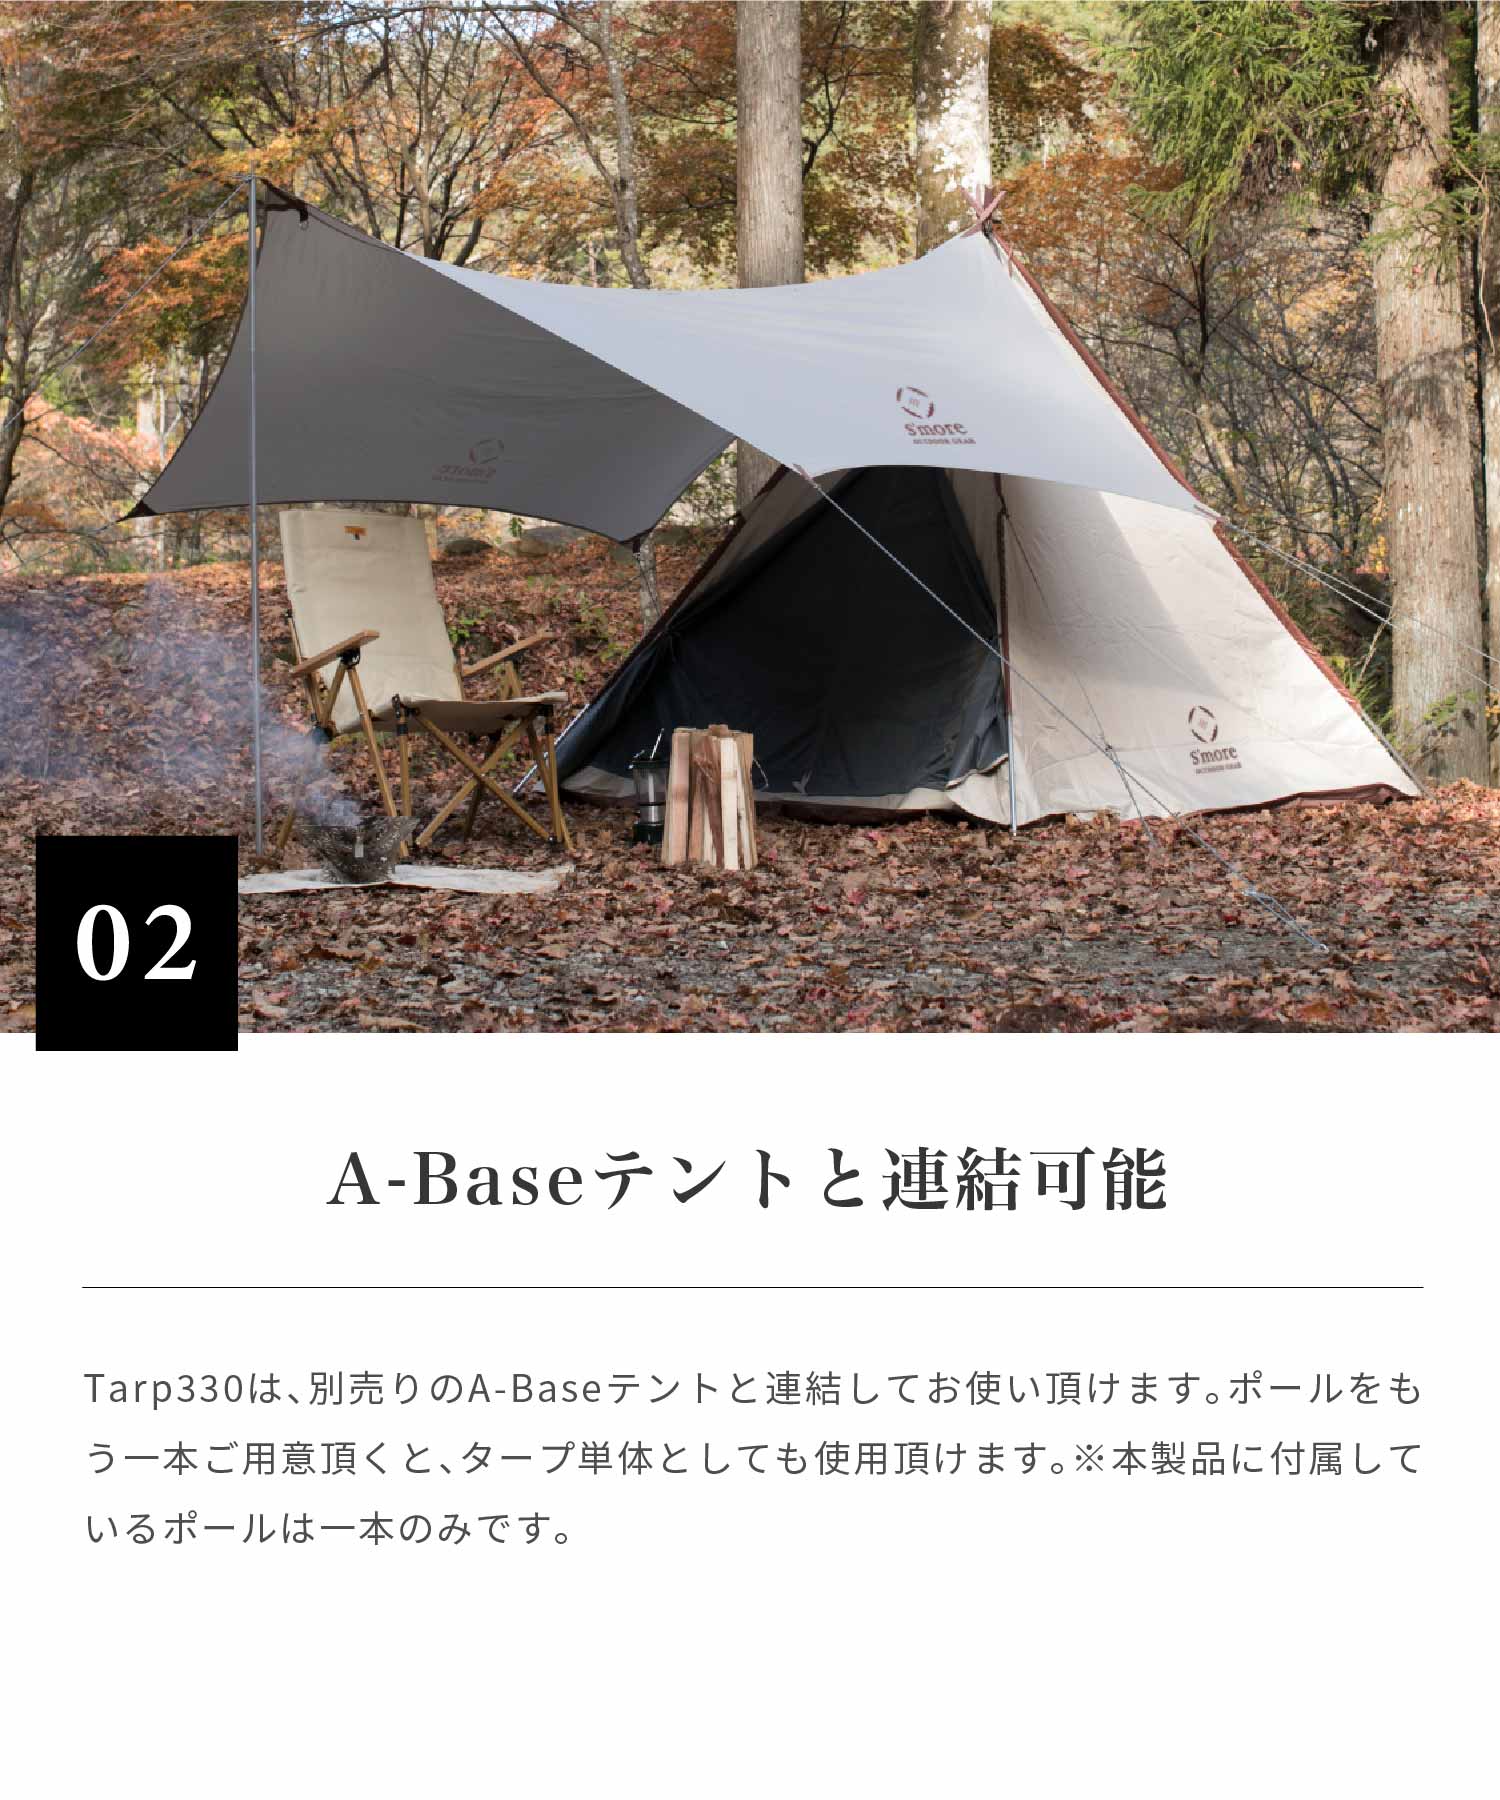 スモア タープ A-Base tent Tarp 330